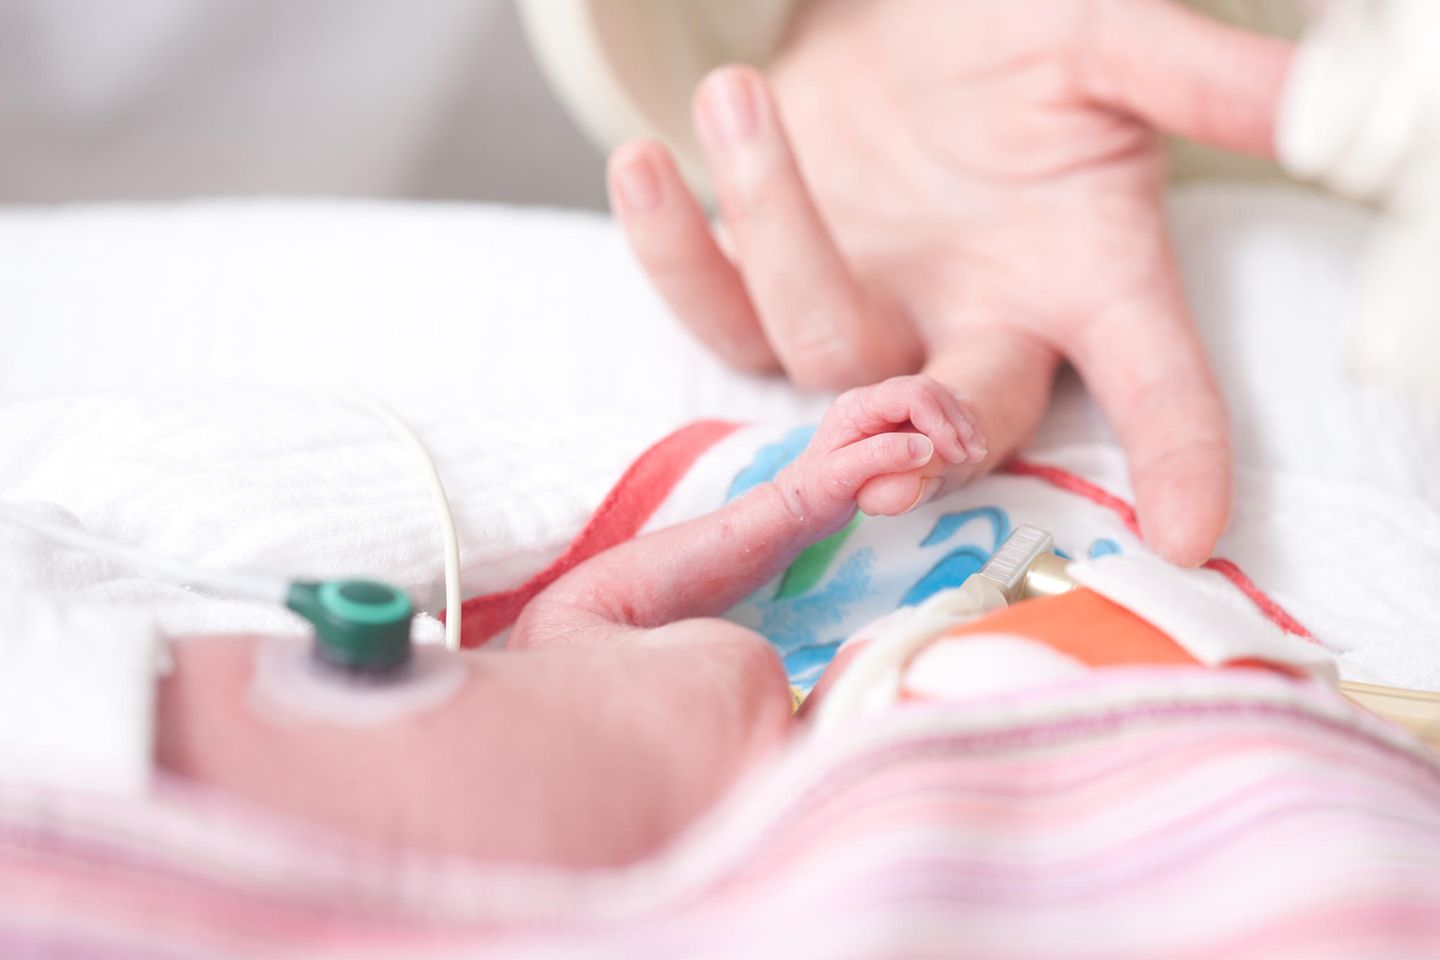 Geburtenstationen: Der medizinische Nutzen des Kuschelns sei weit höher als die Ansteckungsgefahr, argumentiert die WHO